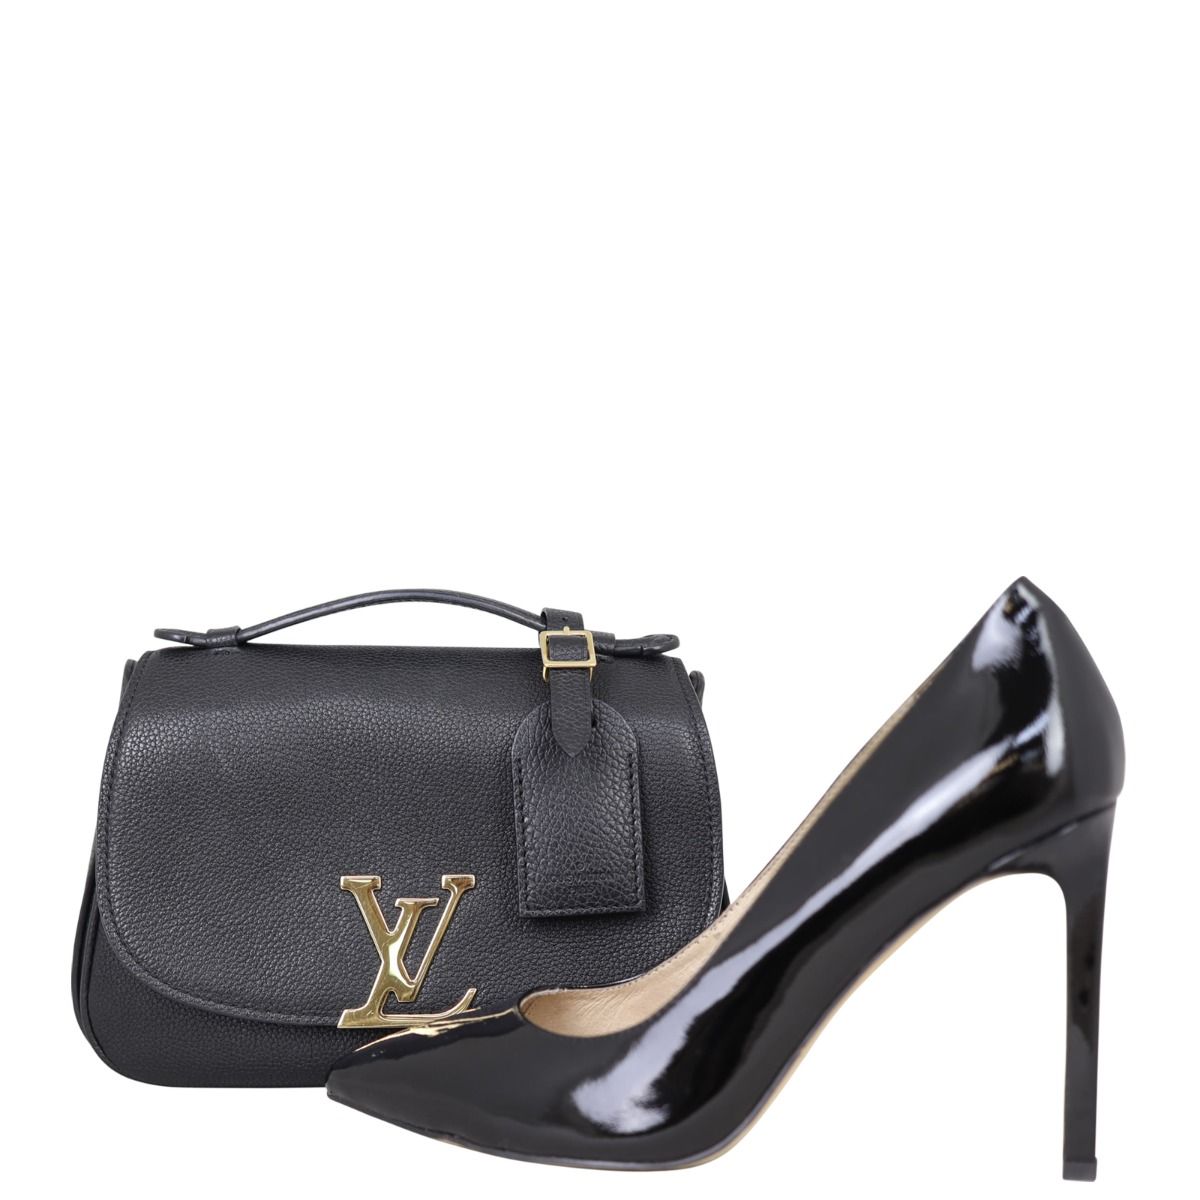 Louis Vuitton Neo Vivienne bag